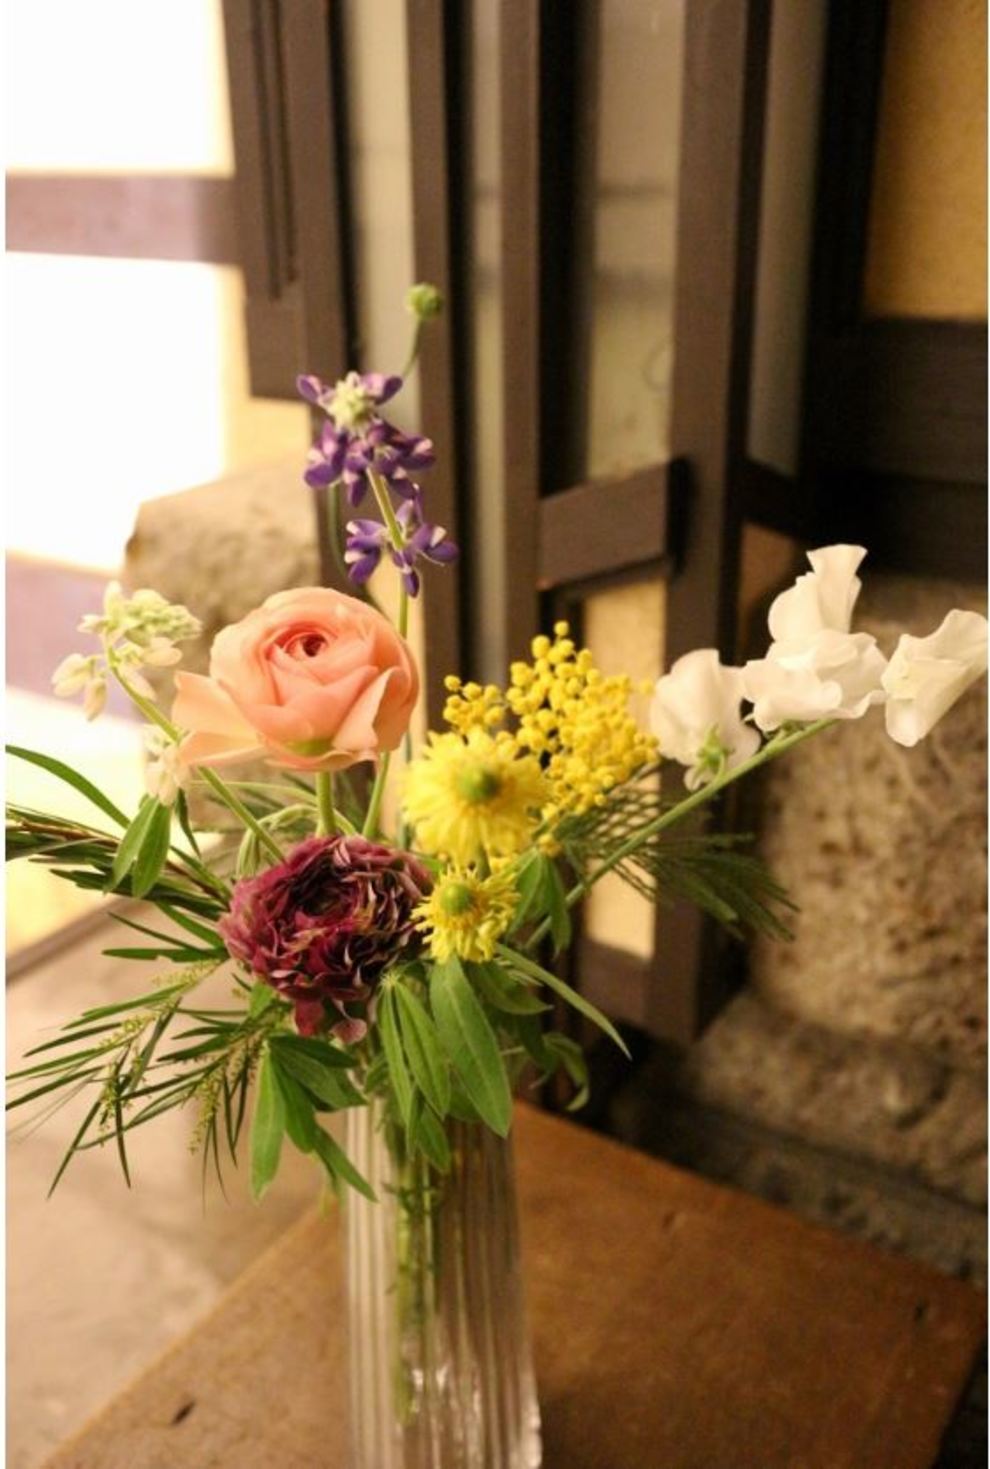 Decoration Florale デコラシオンフローラル 芸術文化 フラワーデザイン Bouquets Ryoko 小林亮子によるフラワーレッスンを自由学園明日館や銀座松屋など都内で開催しています